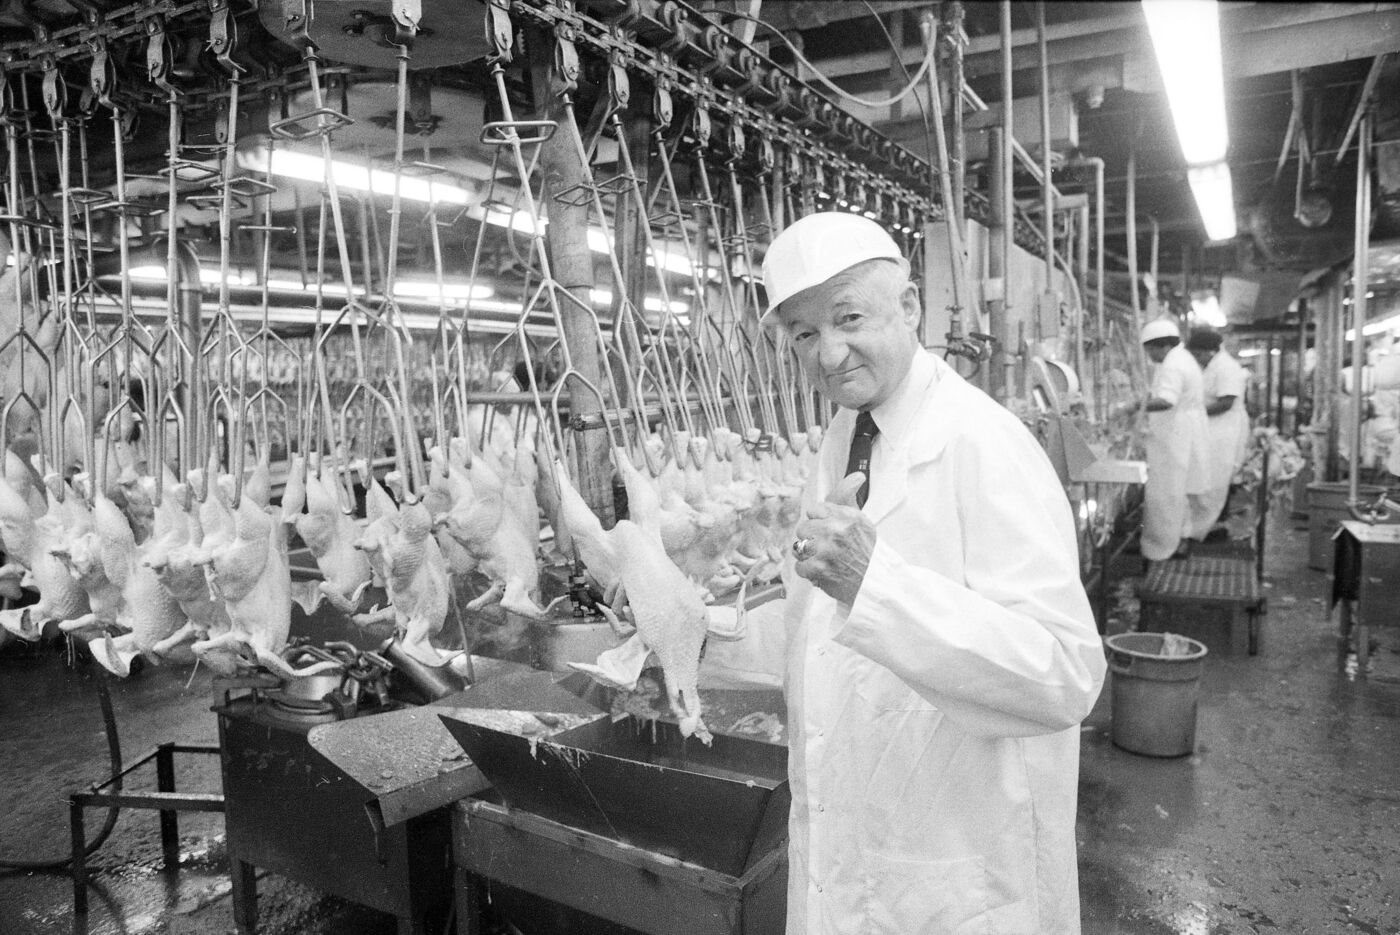 Thế giới kinh ngạc cách người Mỹ ‘chăn’ gà: Biến đây trở thành ‘cỗ máy protein’, sau 75 năm tăng gấp đôi trọng lượng, giảm một nửa thời gian vỗ béo - Ảnh 4.